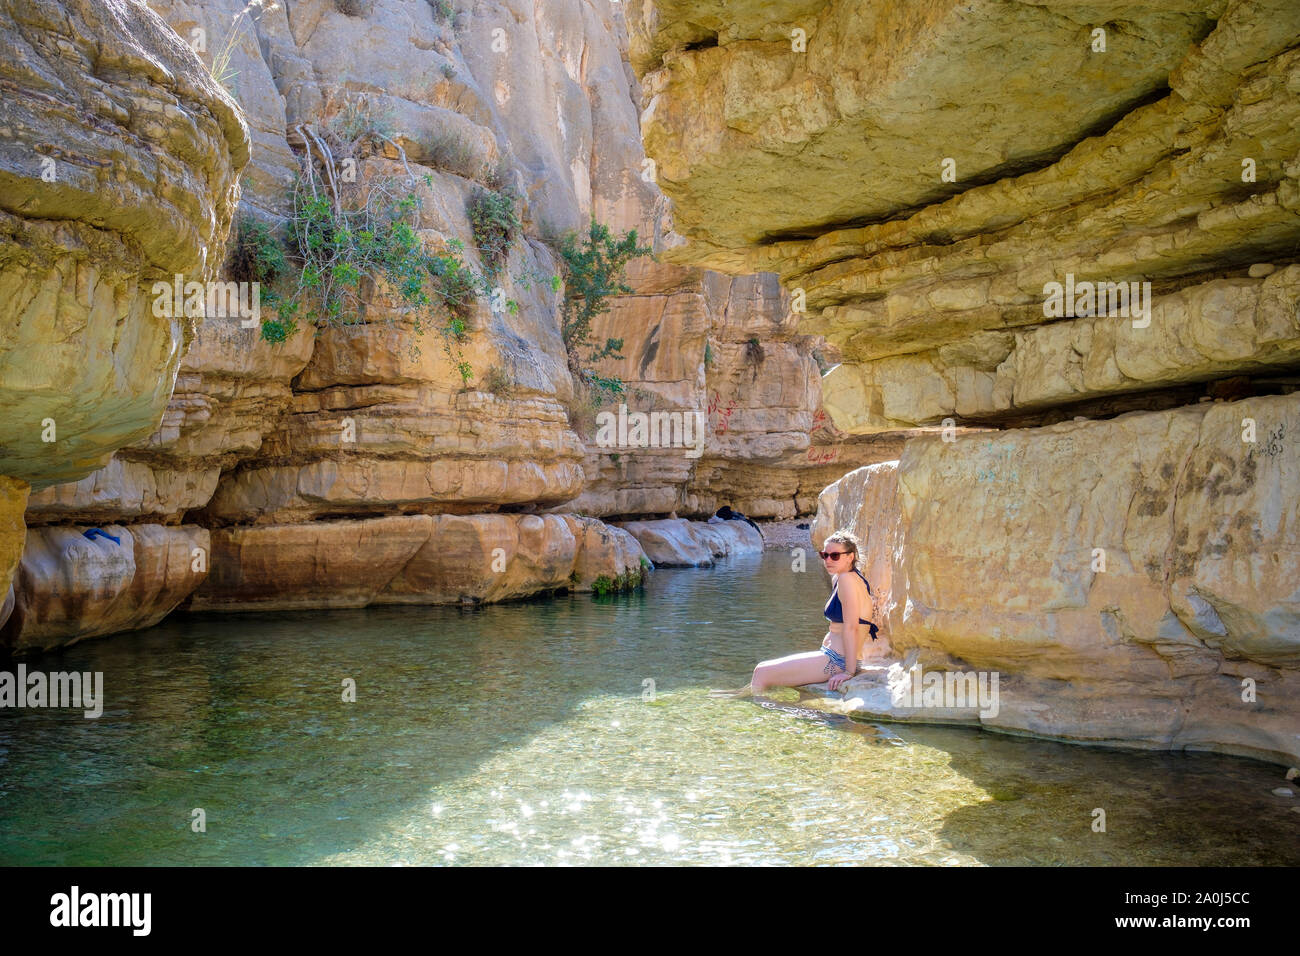 Palestina, West Bank, Gerico. Ein Quelt molla e piscine di acqua fresca entro il Wadi Quelt, Prat River Gorge. (MR) Foto Stock